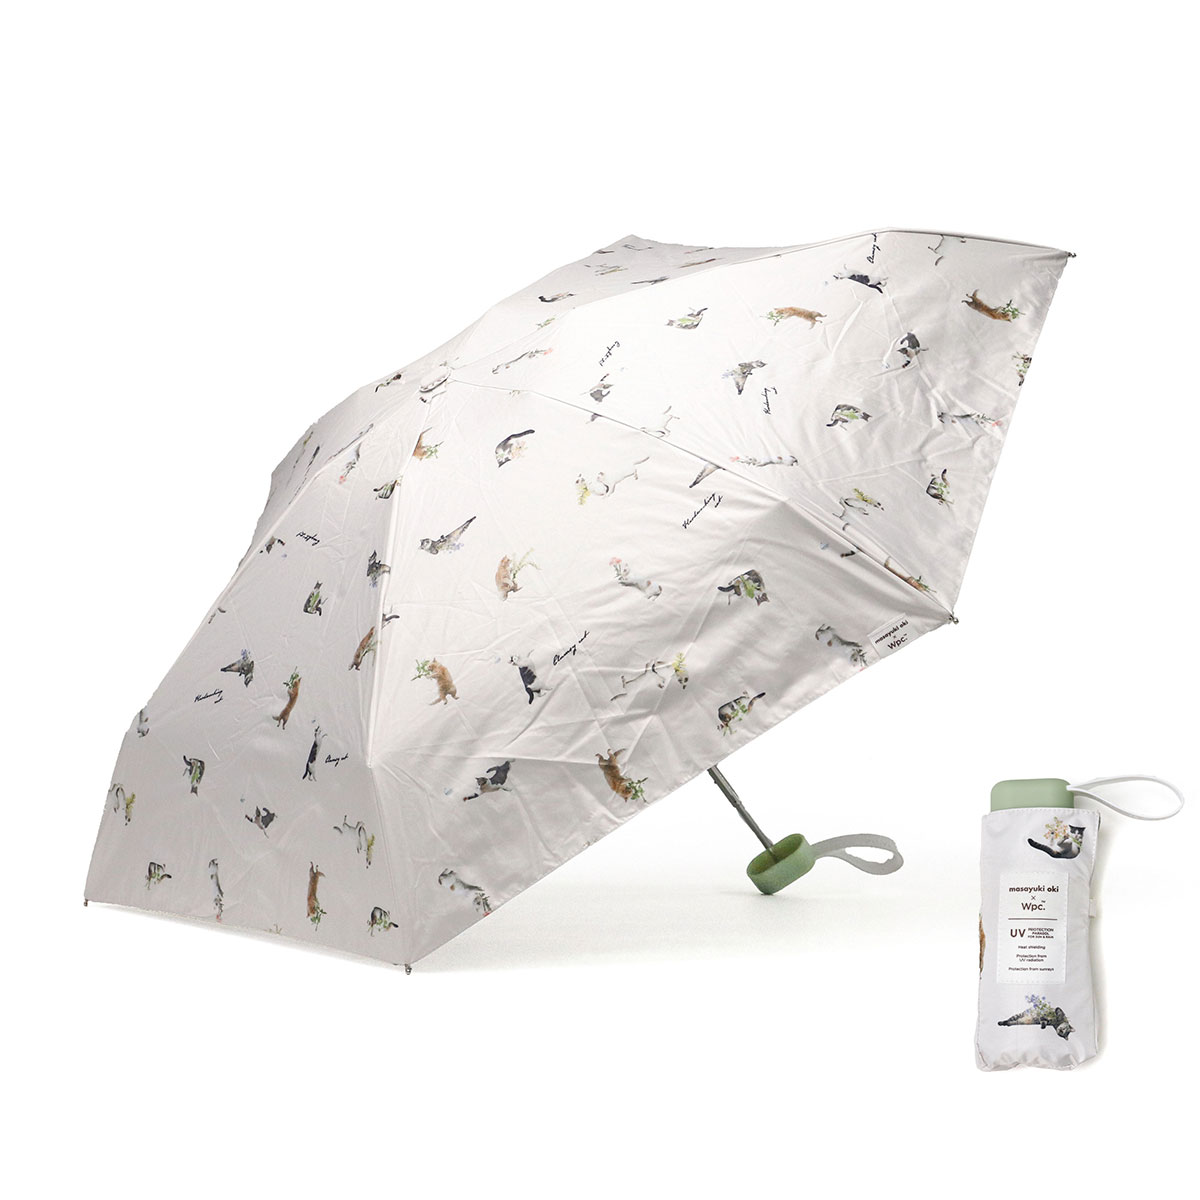 Wpc. 傘 レディース ダブリュピーシー 折りたたみ傘 ブランド おしゃれ 晴雨兼用 軽量 猫柄 ...